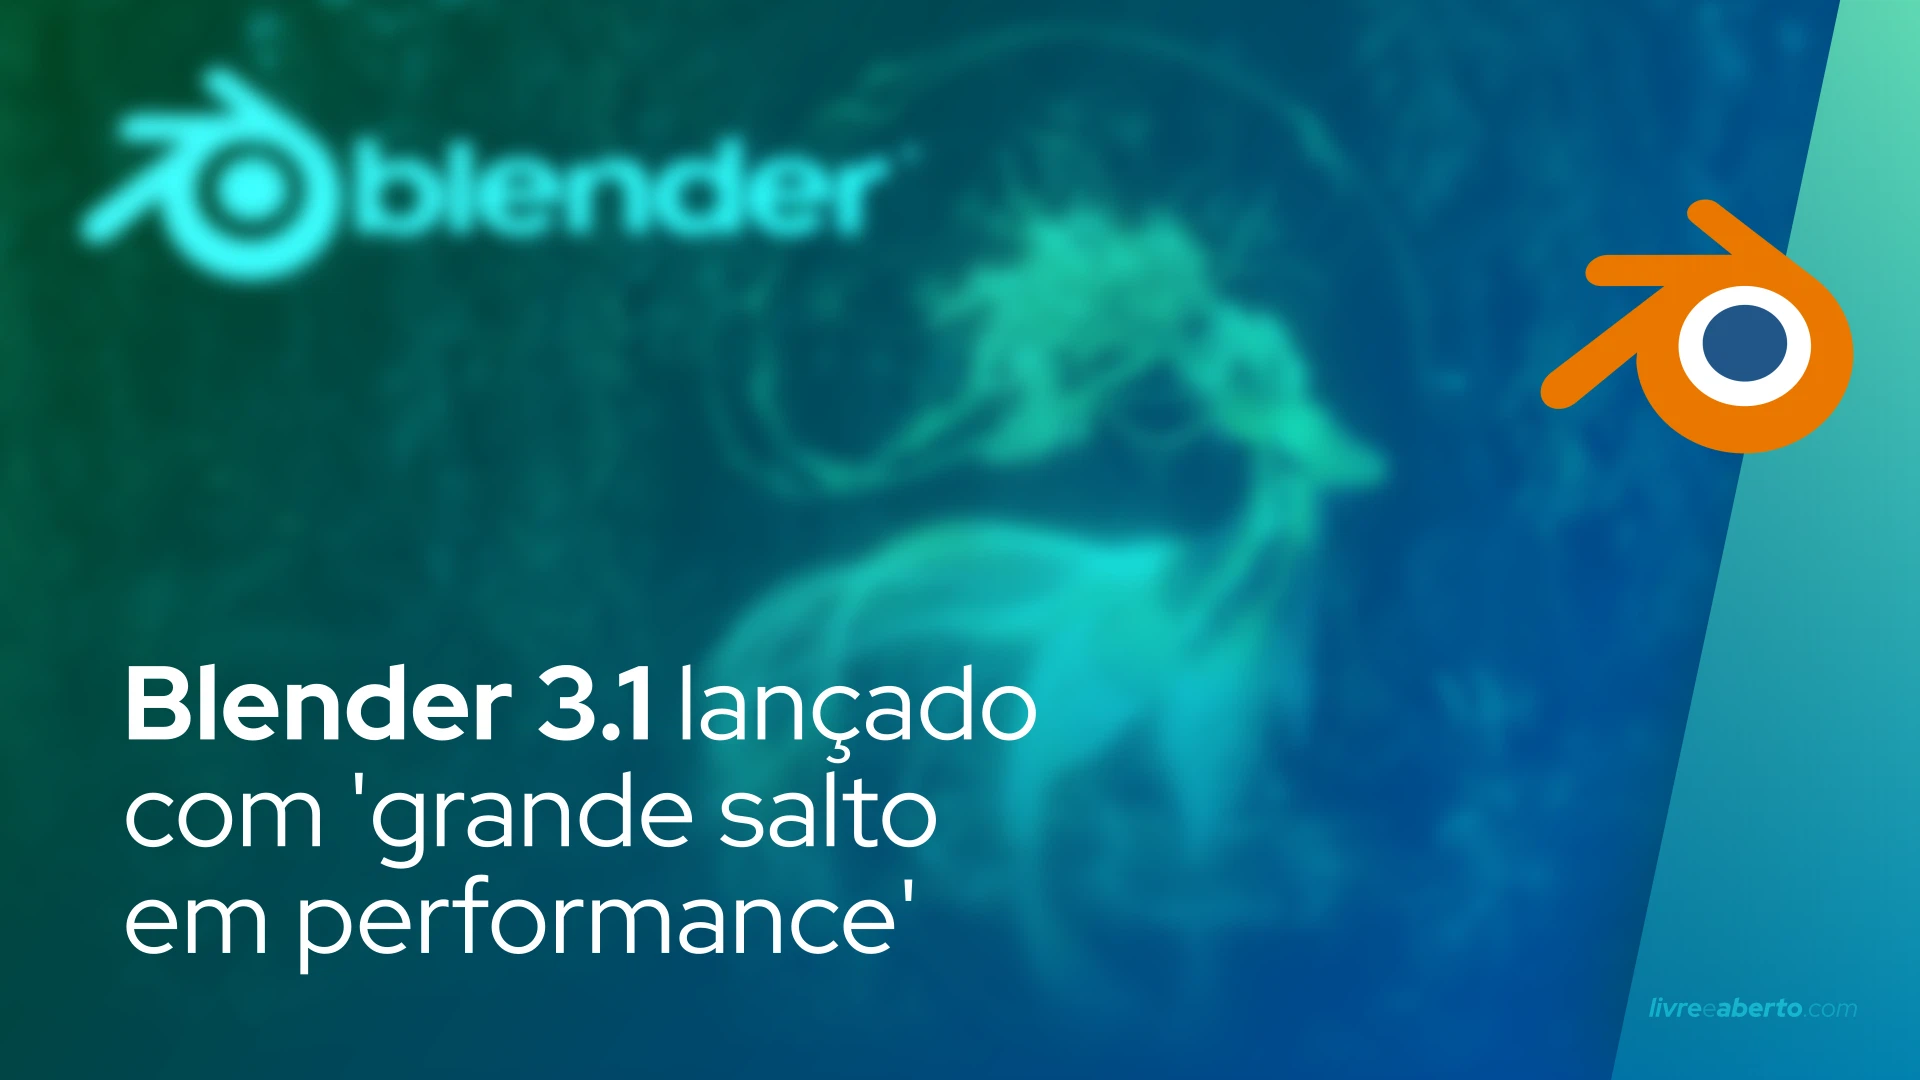 Blender 3.1 lançado com 'grande salto em performance'